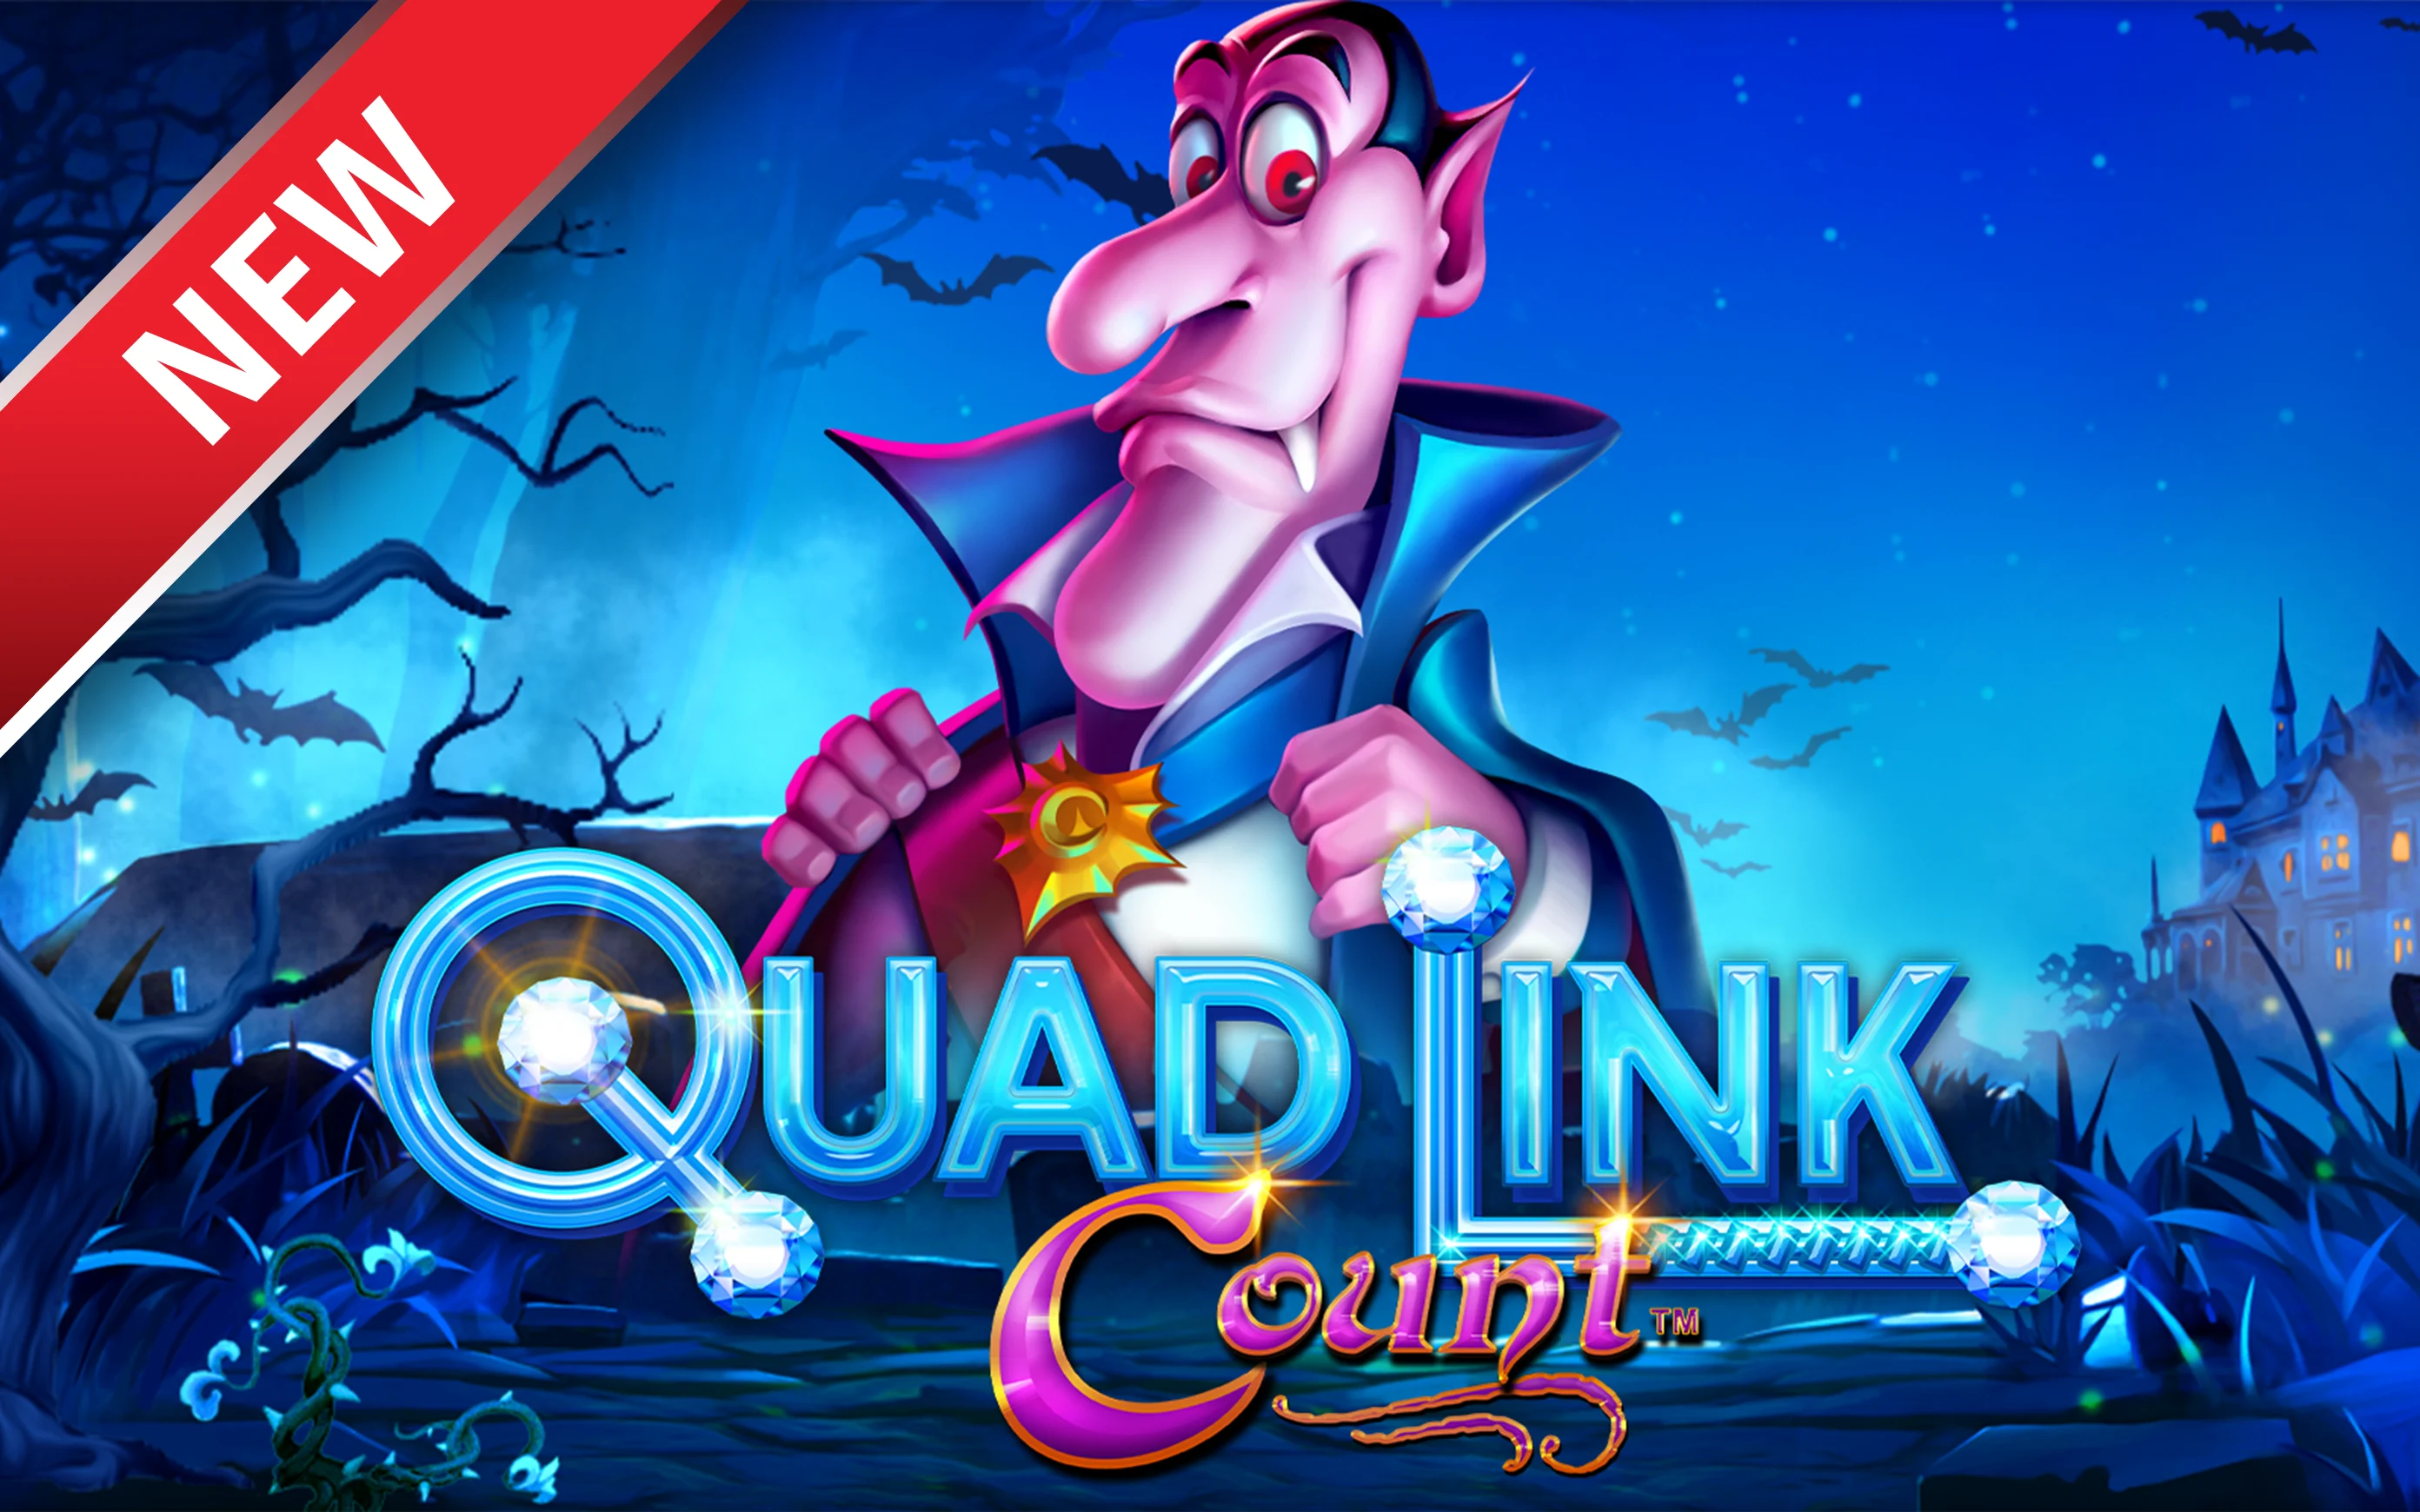 Speel Quad Link: Count™ op Starcasino.be online casino